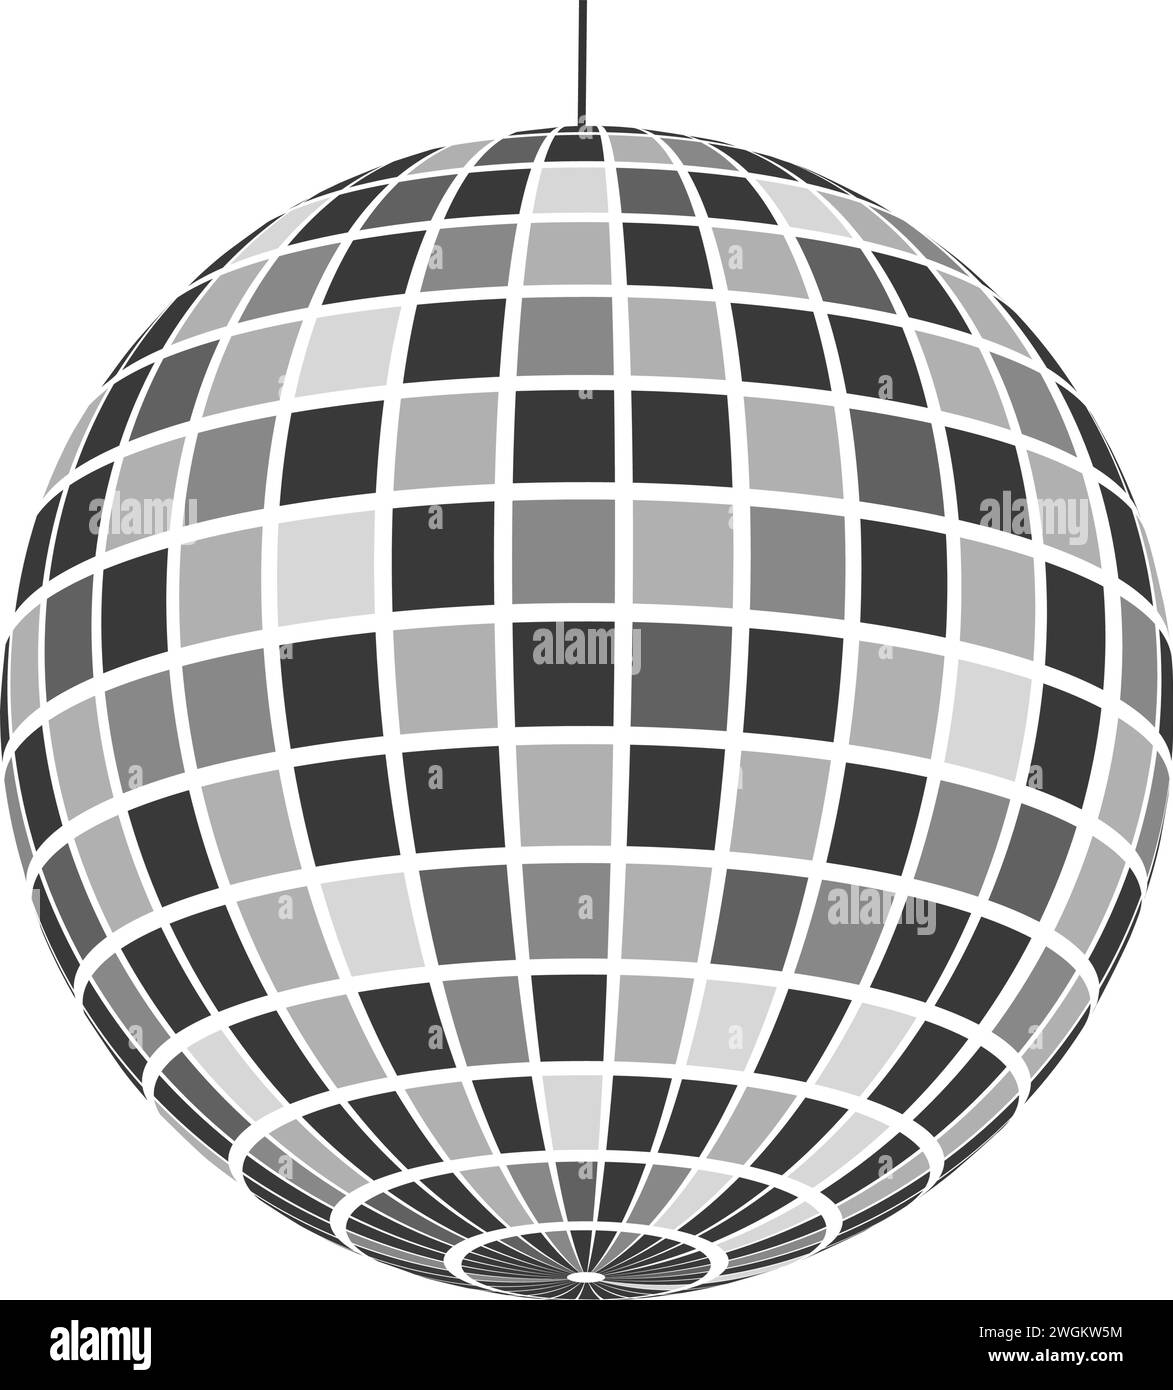 Icône discoball miroir. Sphère de boîte de nuit brillante. Danse musique fête disco ball. Mirrorball dans les années 70 années 80 années 90 style discothèque rétro. Symbole de la vie nocturne Illustration de Vecteur